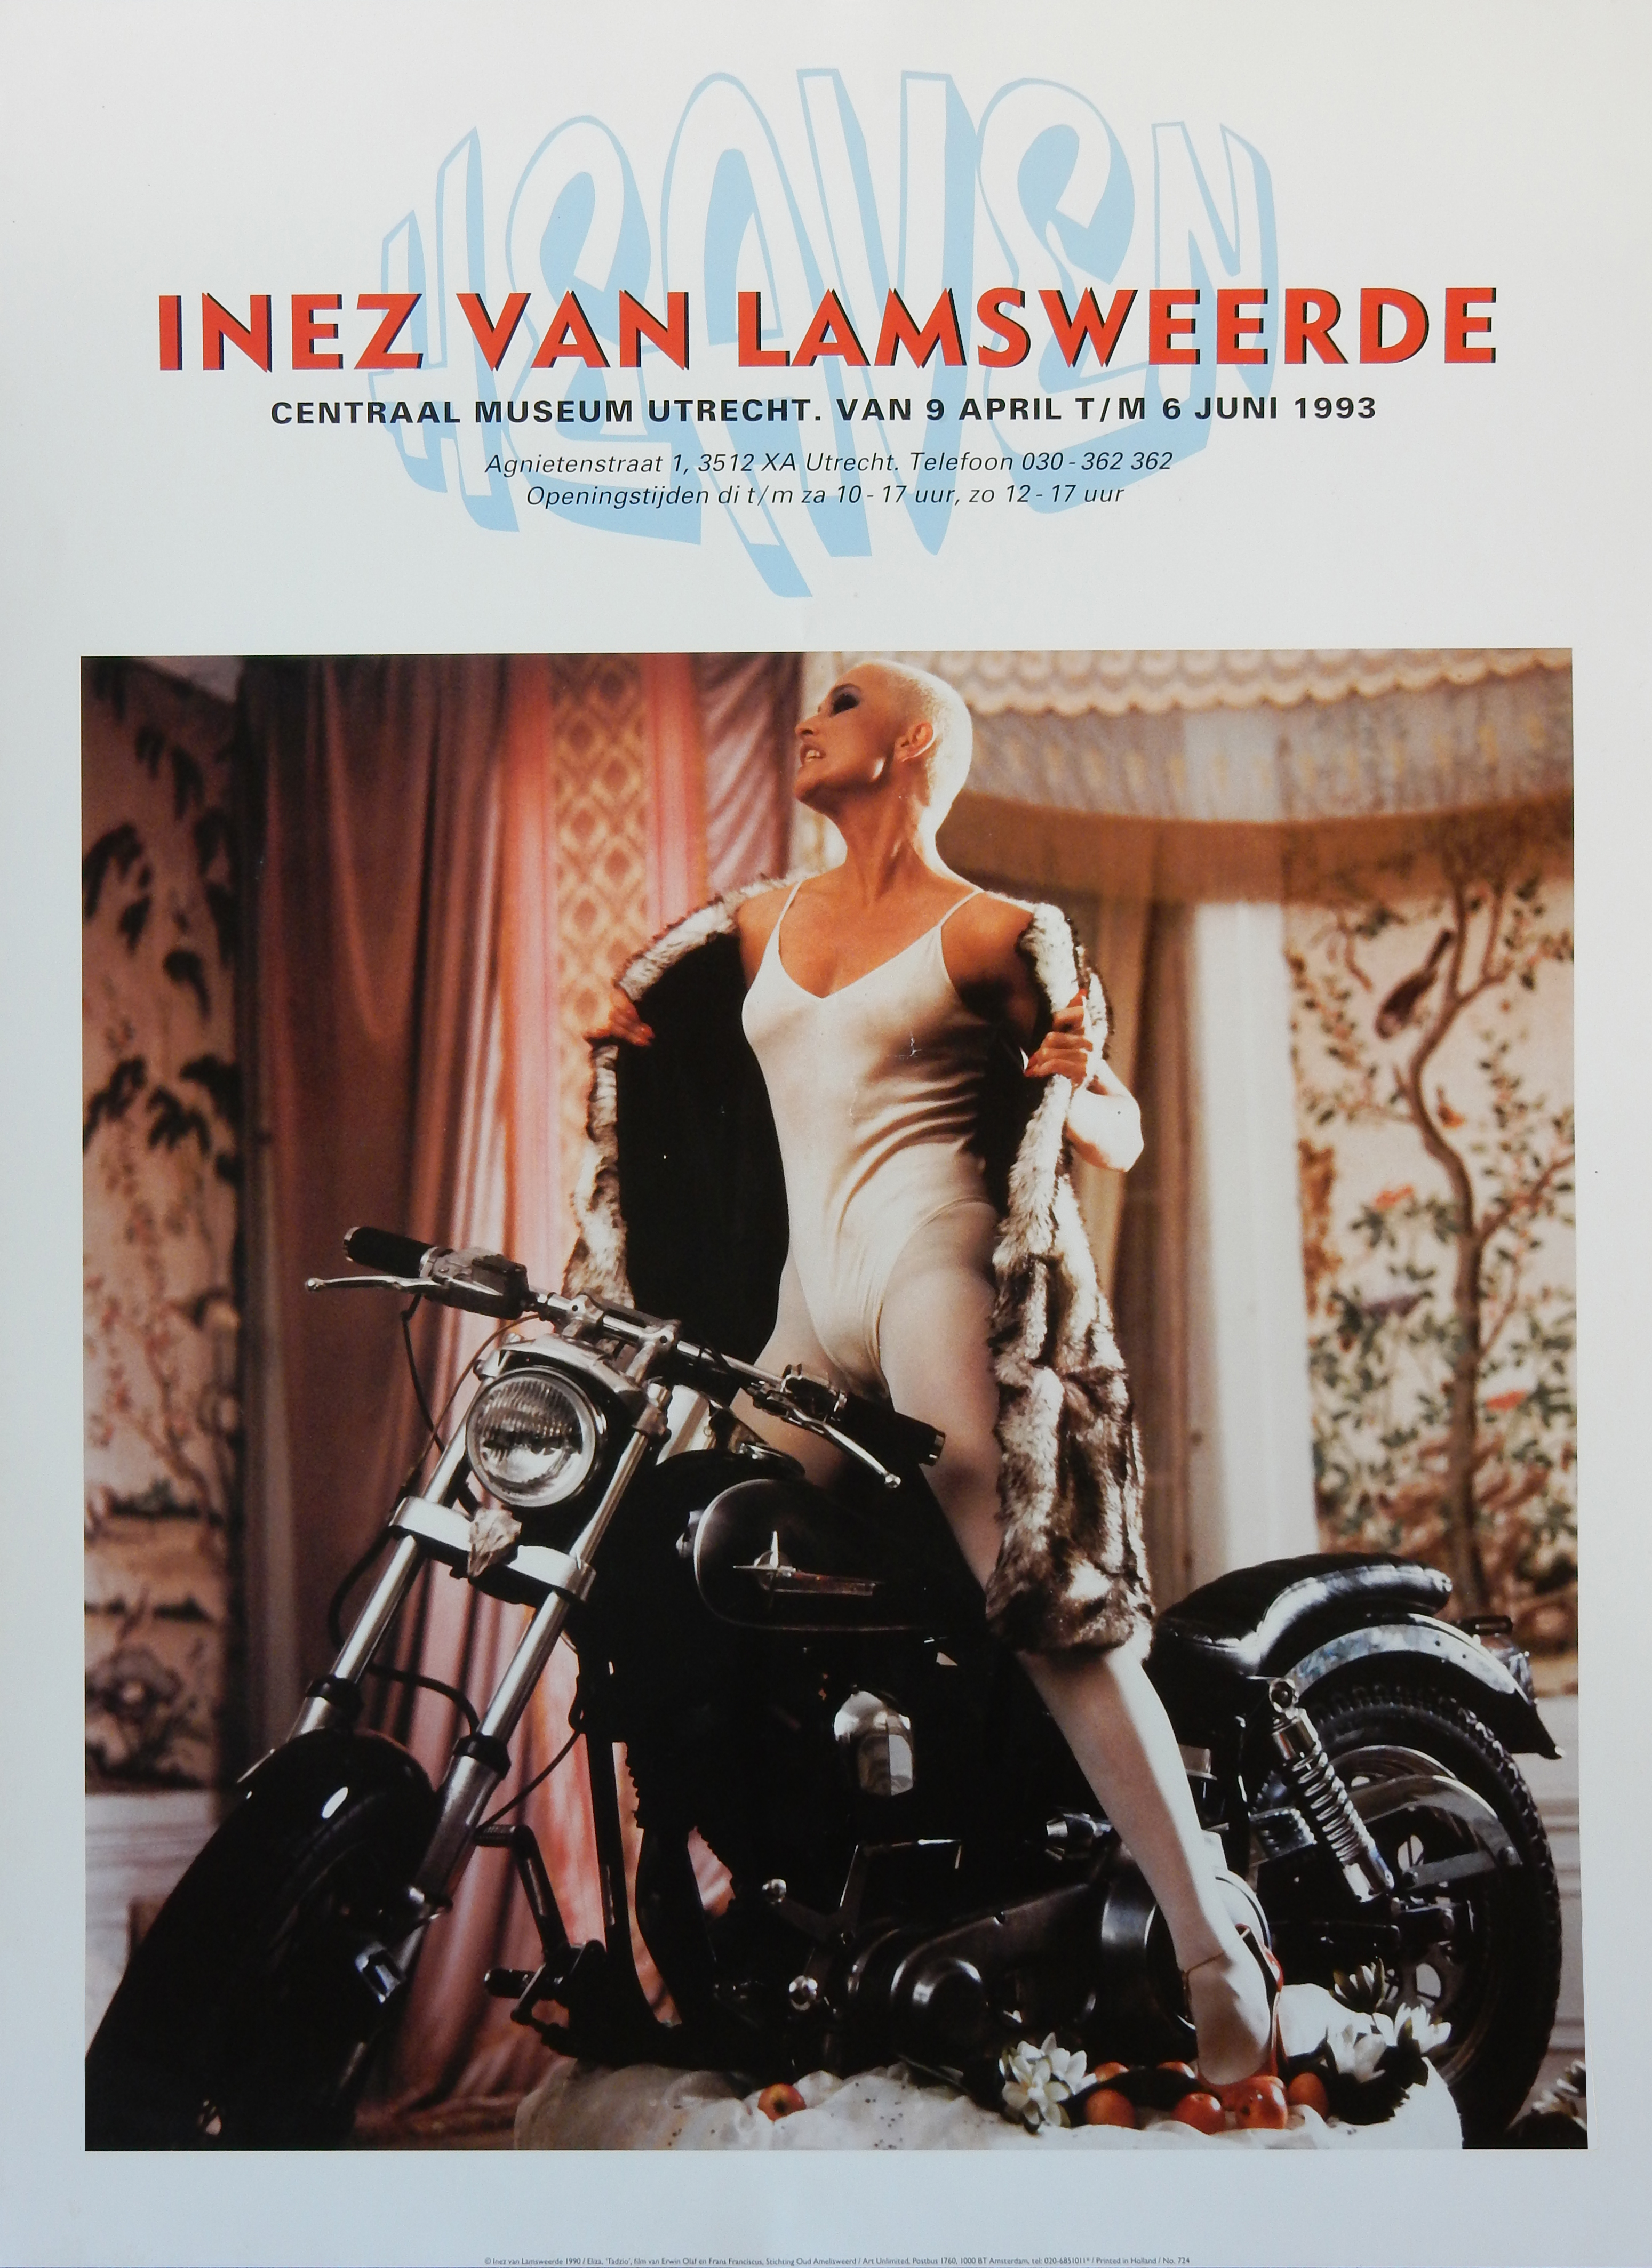 Tentoonstellingsaffiche 'Heaven'  van Inez van Lamsweerde uit 1993  met foto uit de film 'Tadzio' 